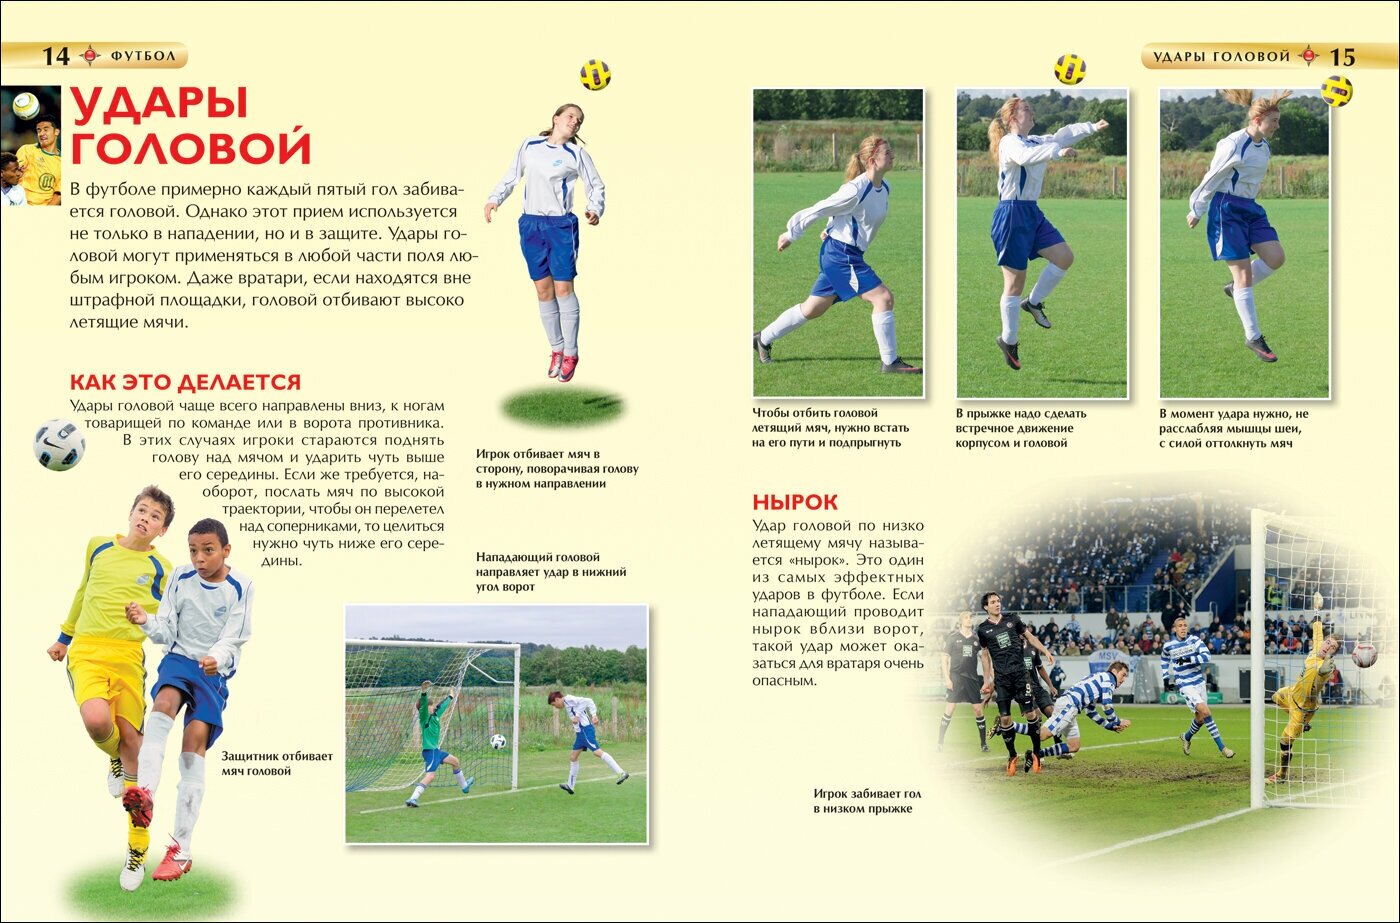 Футбол (Гиффорд Клайв , Никитин В.П. (переводчик)) - фото №8